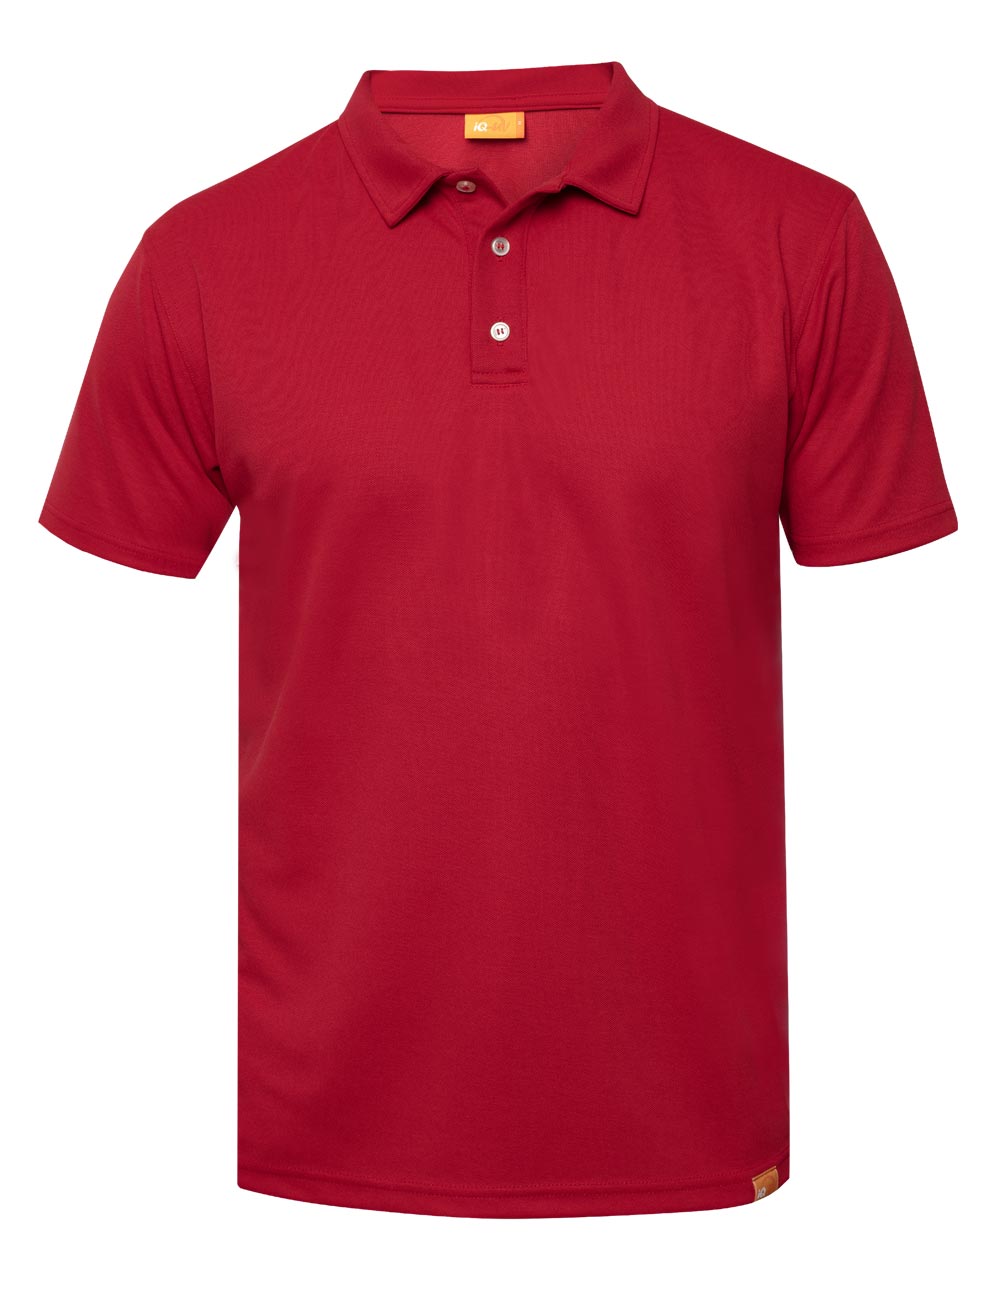 UV 50+ LSF 50+ Herren-Poloshirt rot